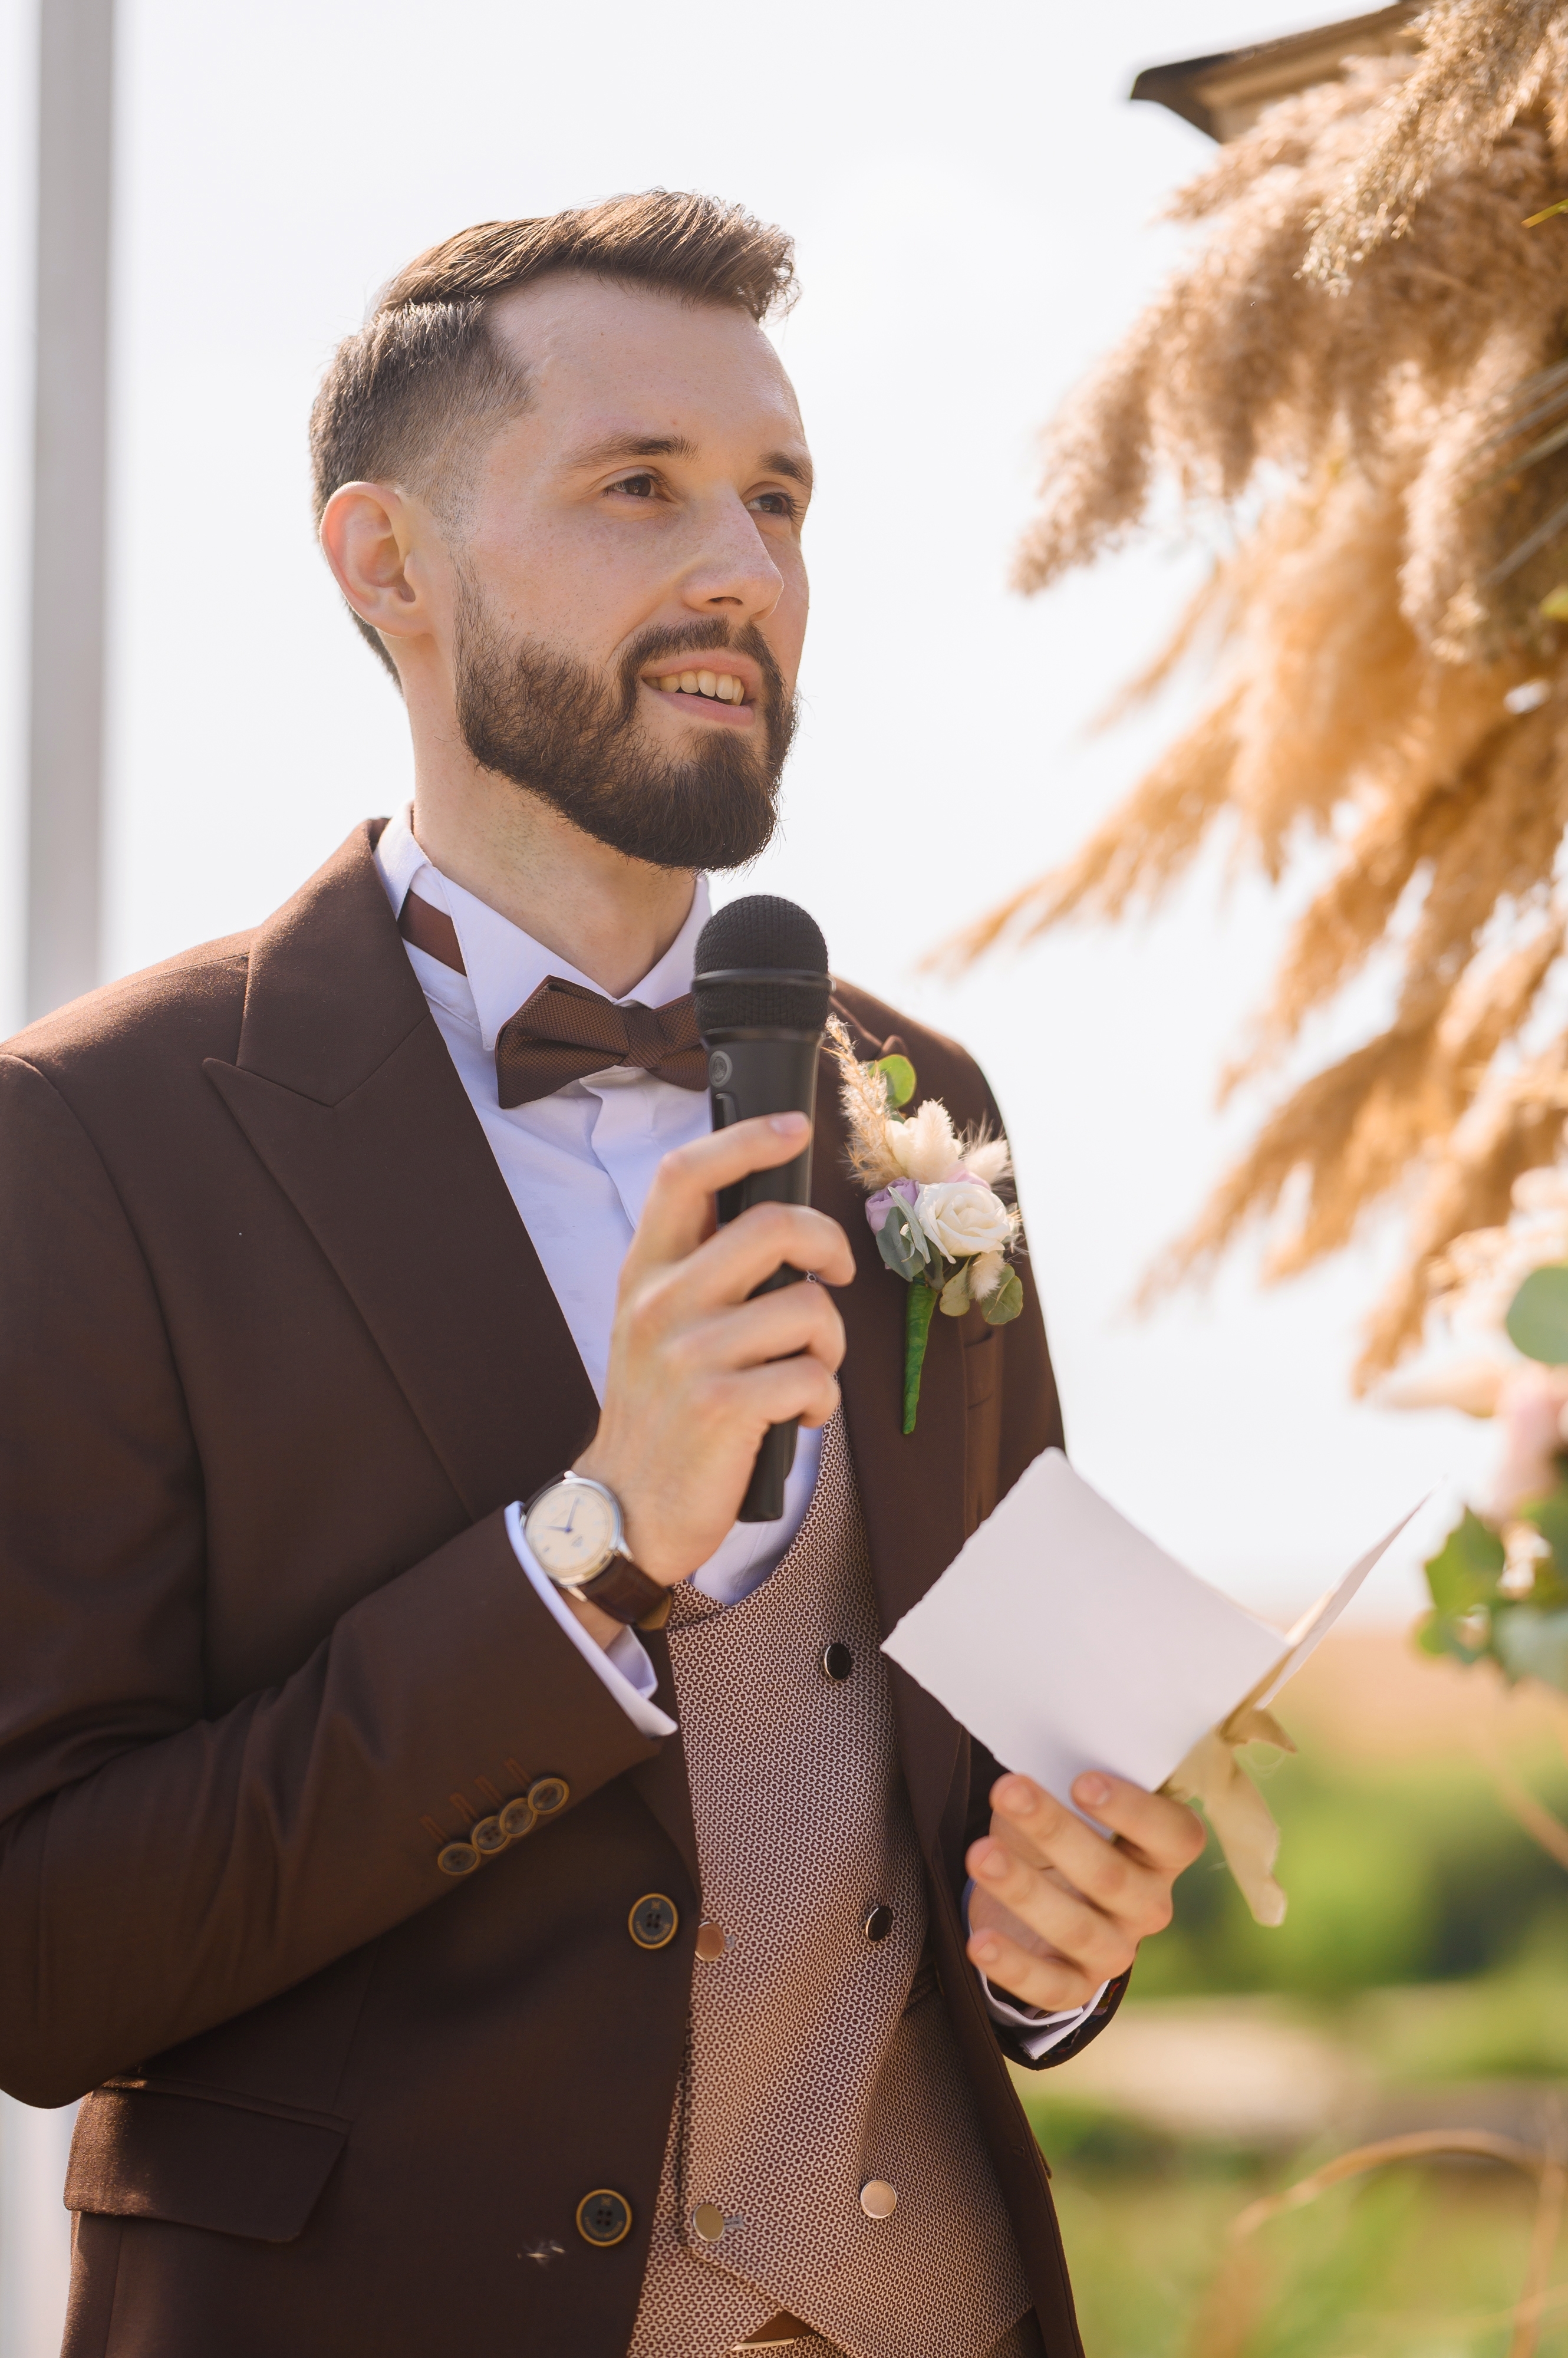 Un hombre vestido con traje marrón, con flor en el ojal y pajarita dando un discurso en una boda. | Foto: Shutterstock